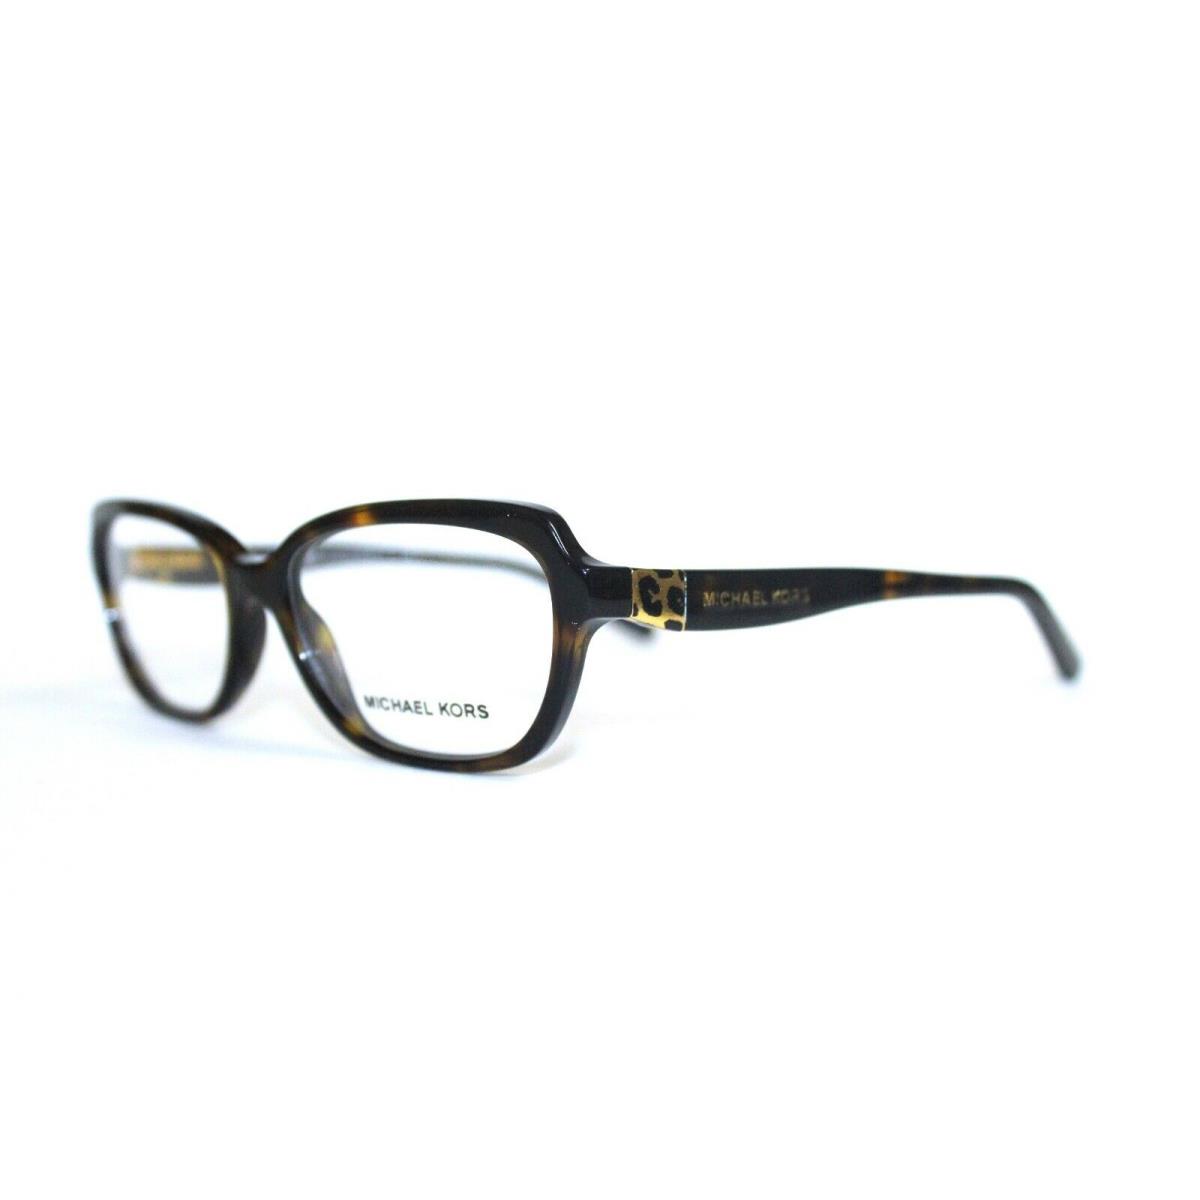 Michael Kors MK 4025 3006 Sadie IV Havana RX Eyeglasses 51-16-135